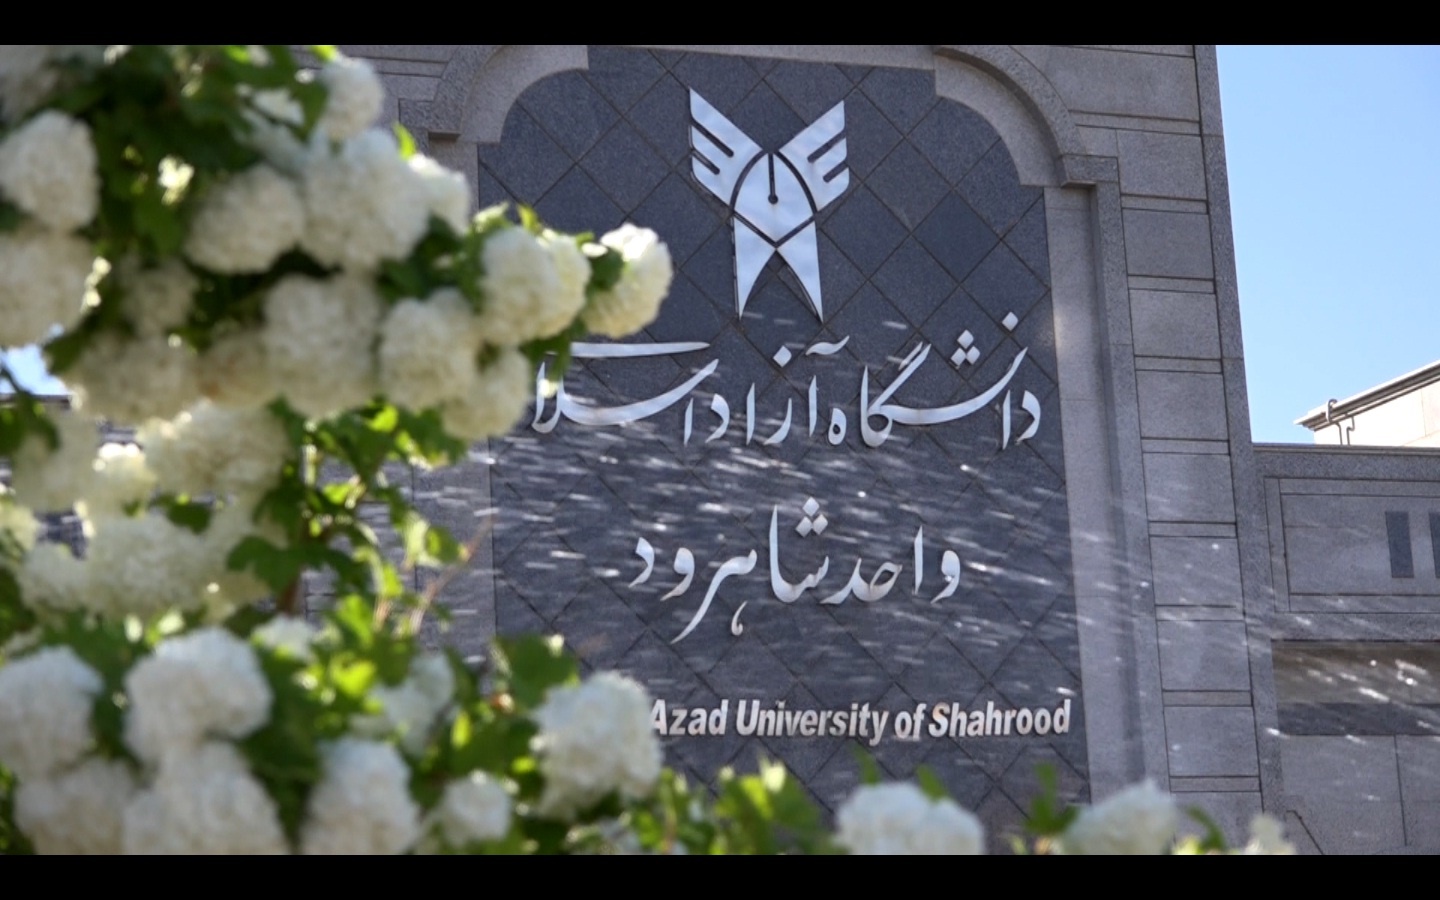 احیاء مجدد کرسی از دست رفته دانشگاه آزاد شاهرود در استان با آمدن رئیس جدید دانشگاه